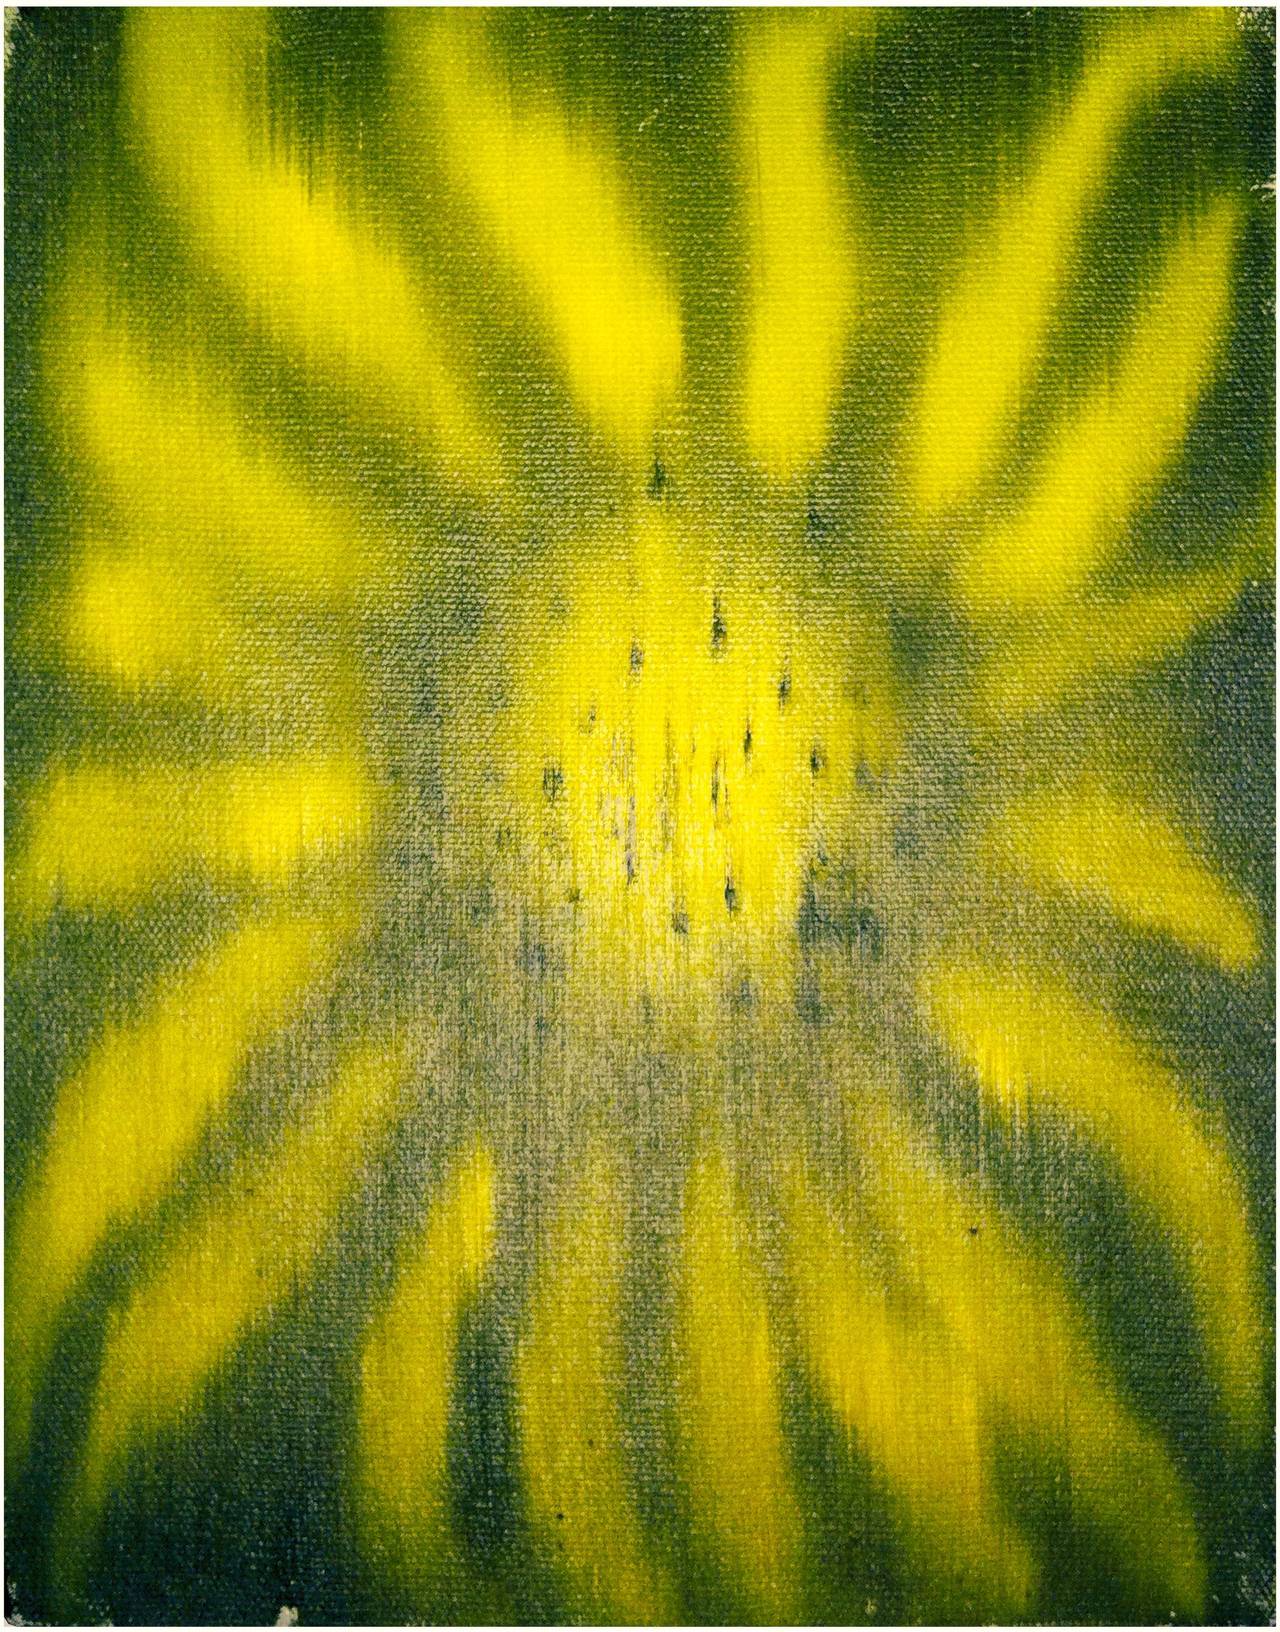 Sunflower - Painting by Ross Bleckner